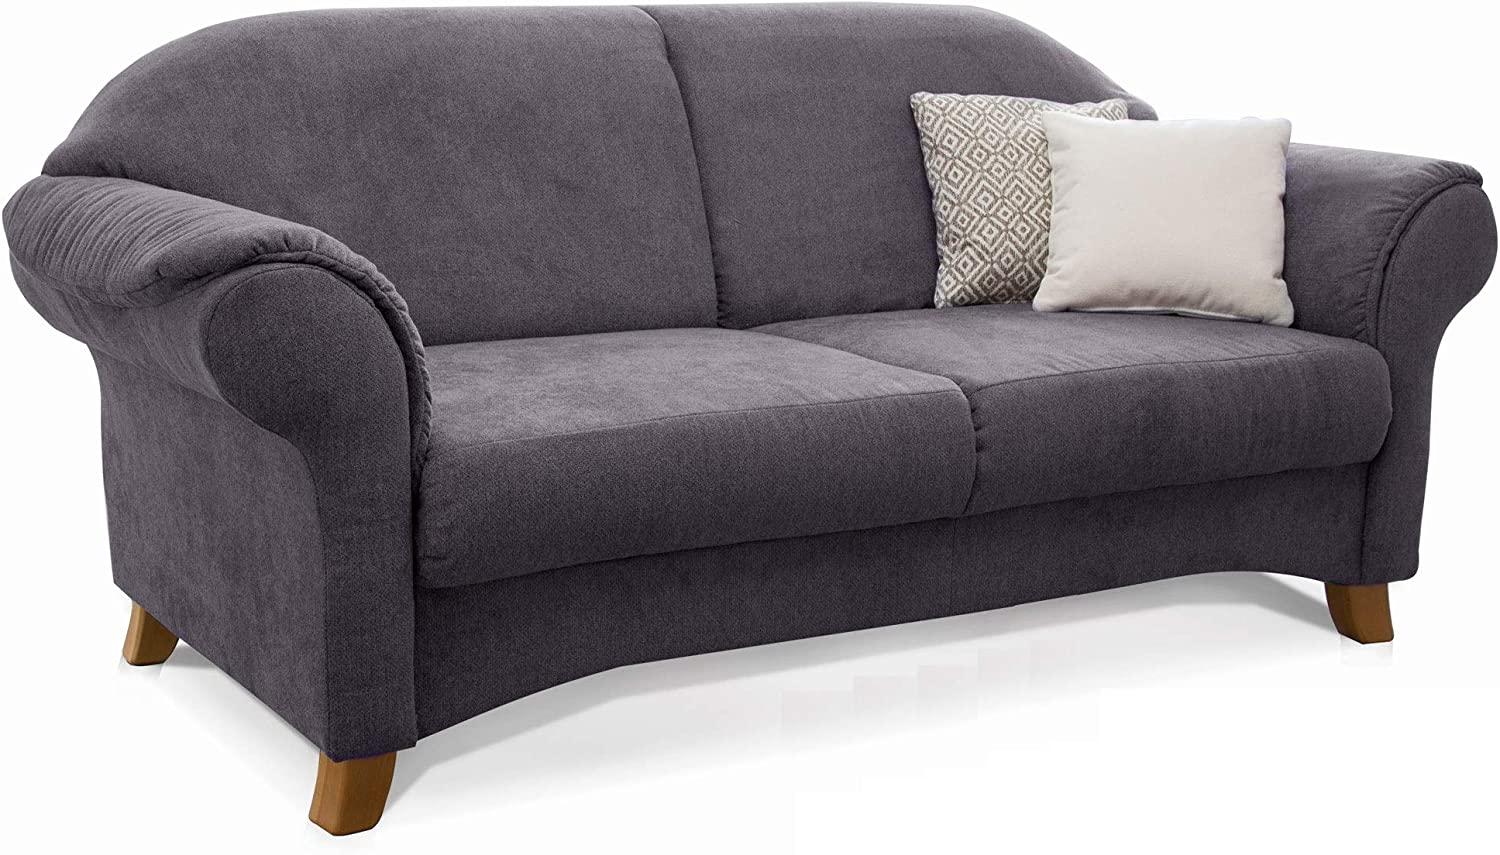 Cavadore 3-Sitzer Sofa Maifayr mit Federkern / Moderne 3-sitzige Couch im Landhausstil mit Holzfüßen / 194 x 90 x 90 / grau Bild 1